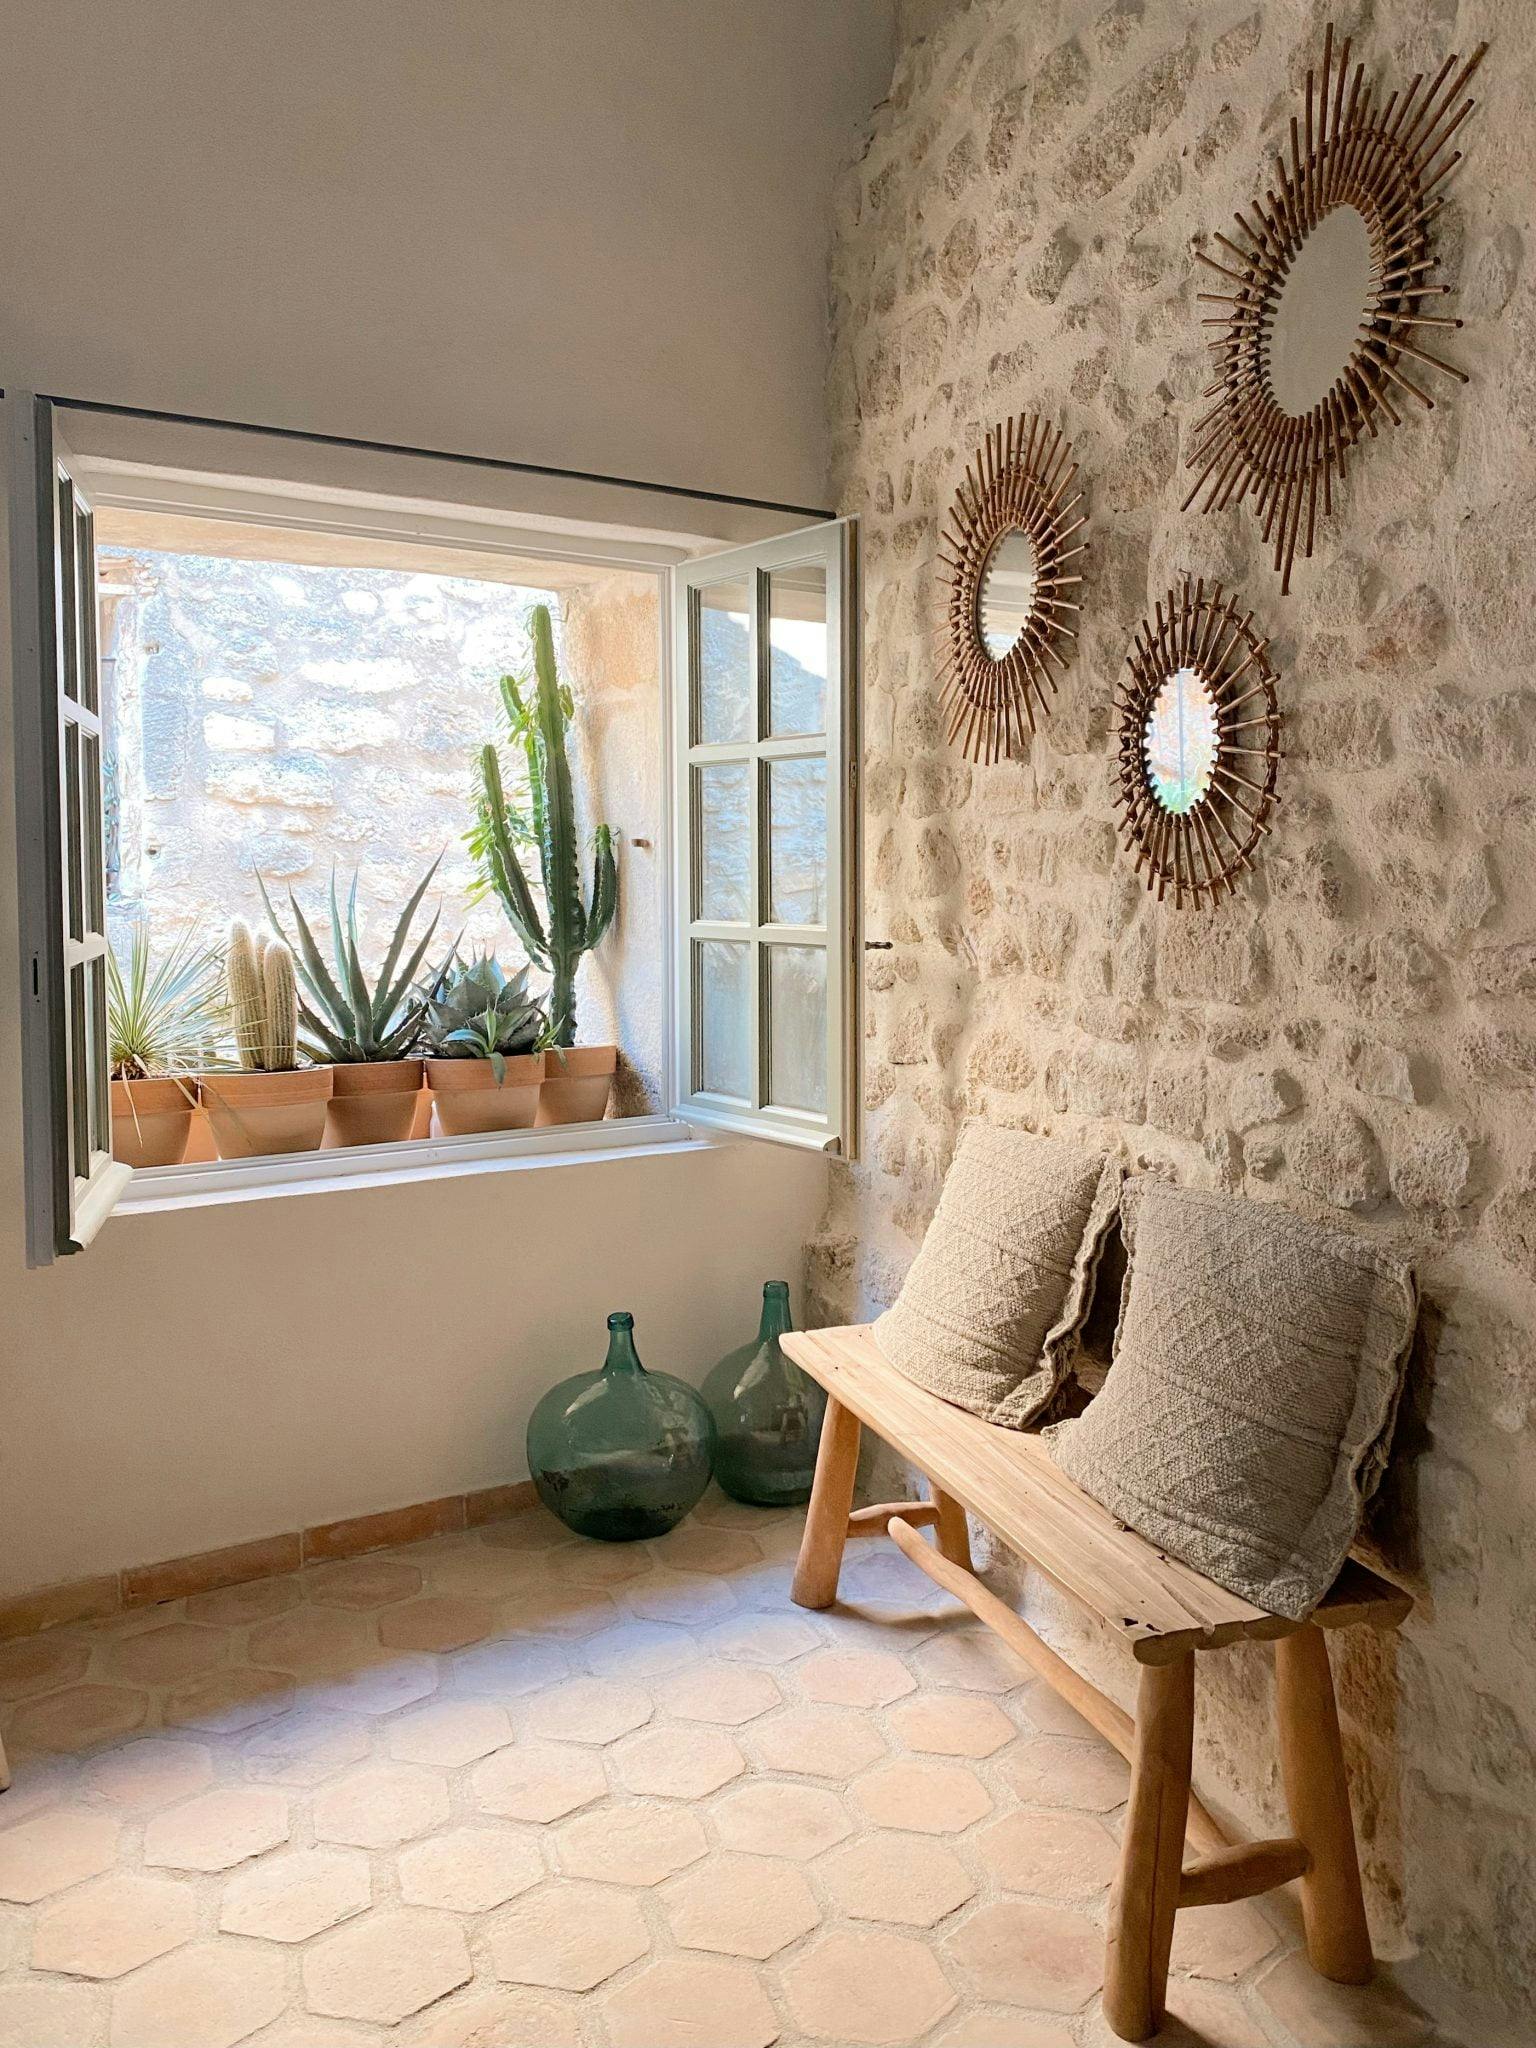 Rebord d'une fenêtre stylisée avec des cactus en pots